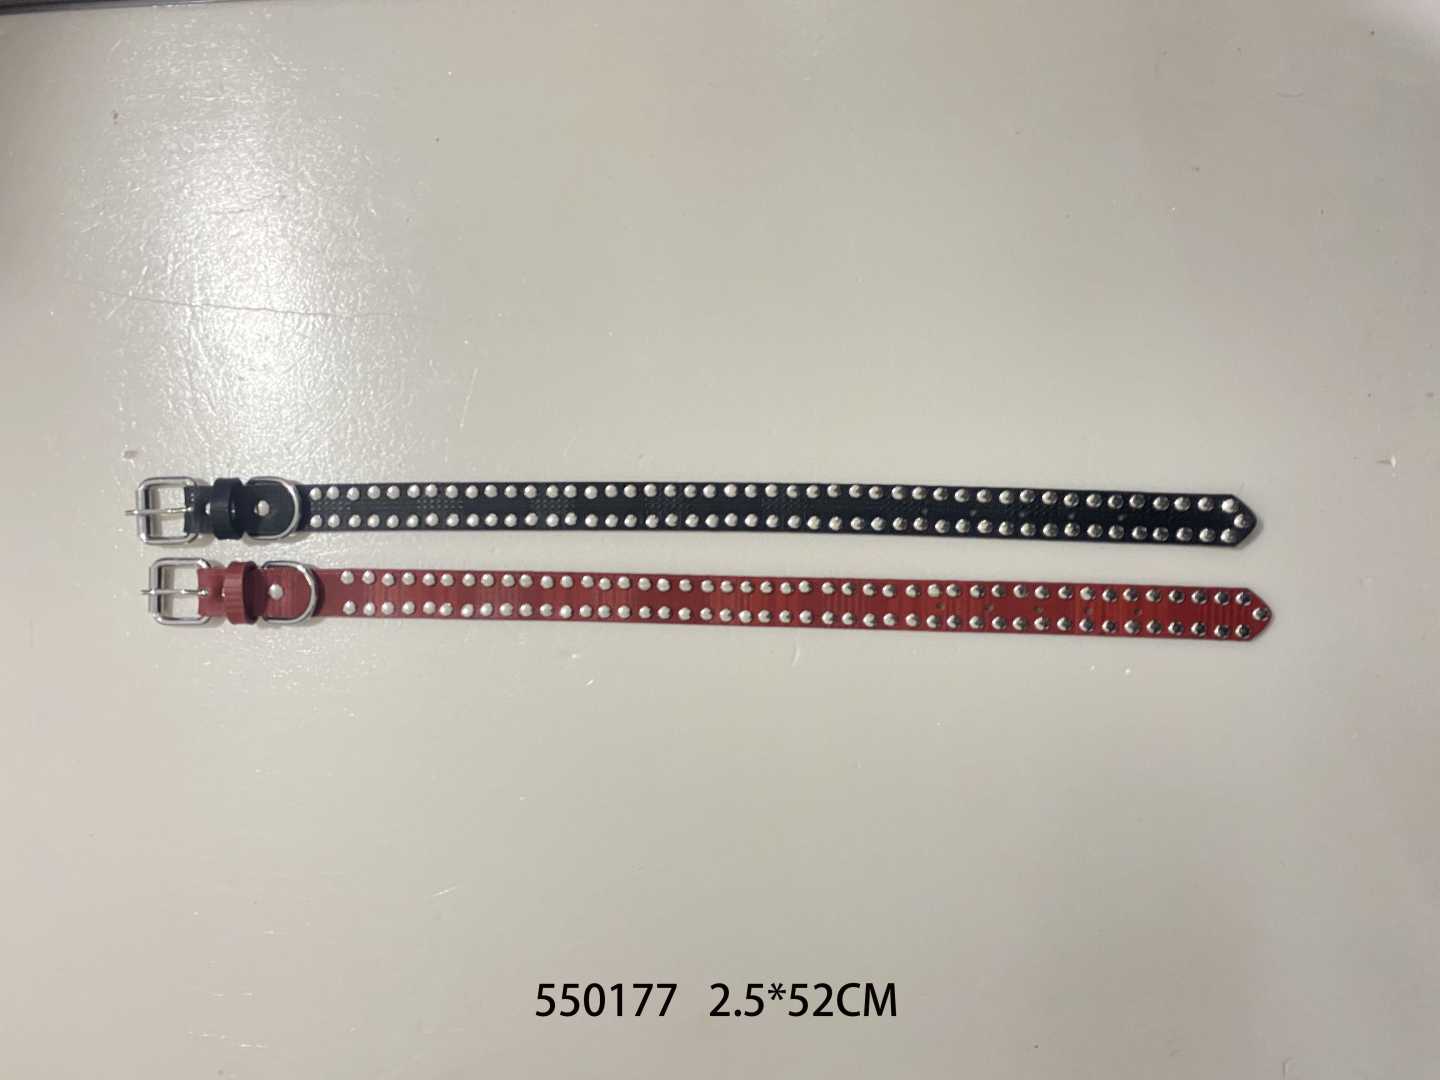 Collar - Dog collar - 2.5x52cm - 550177